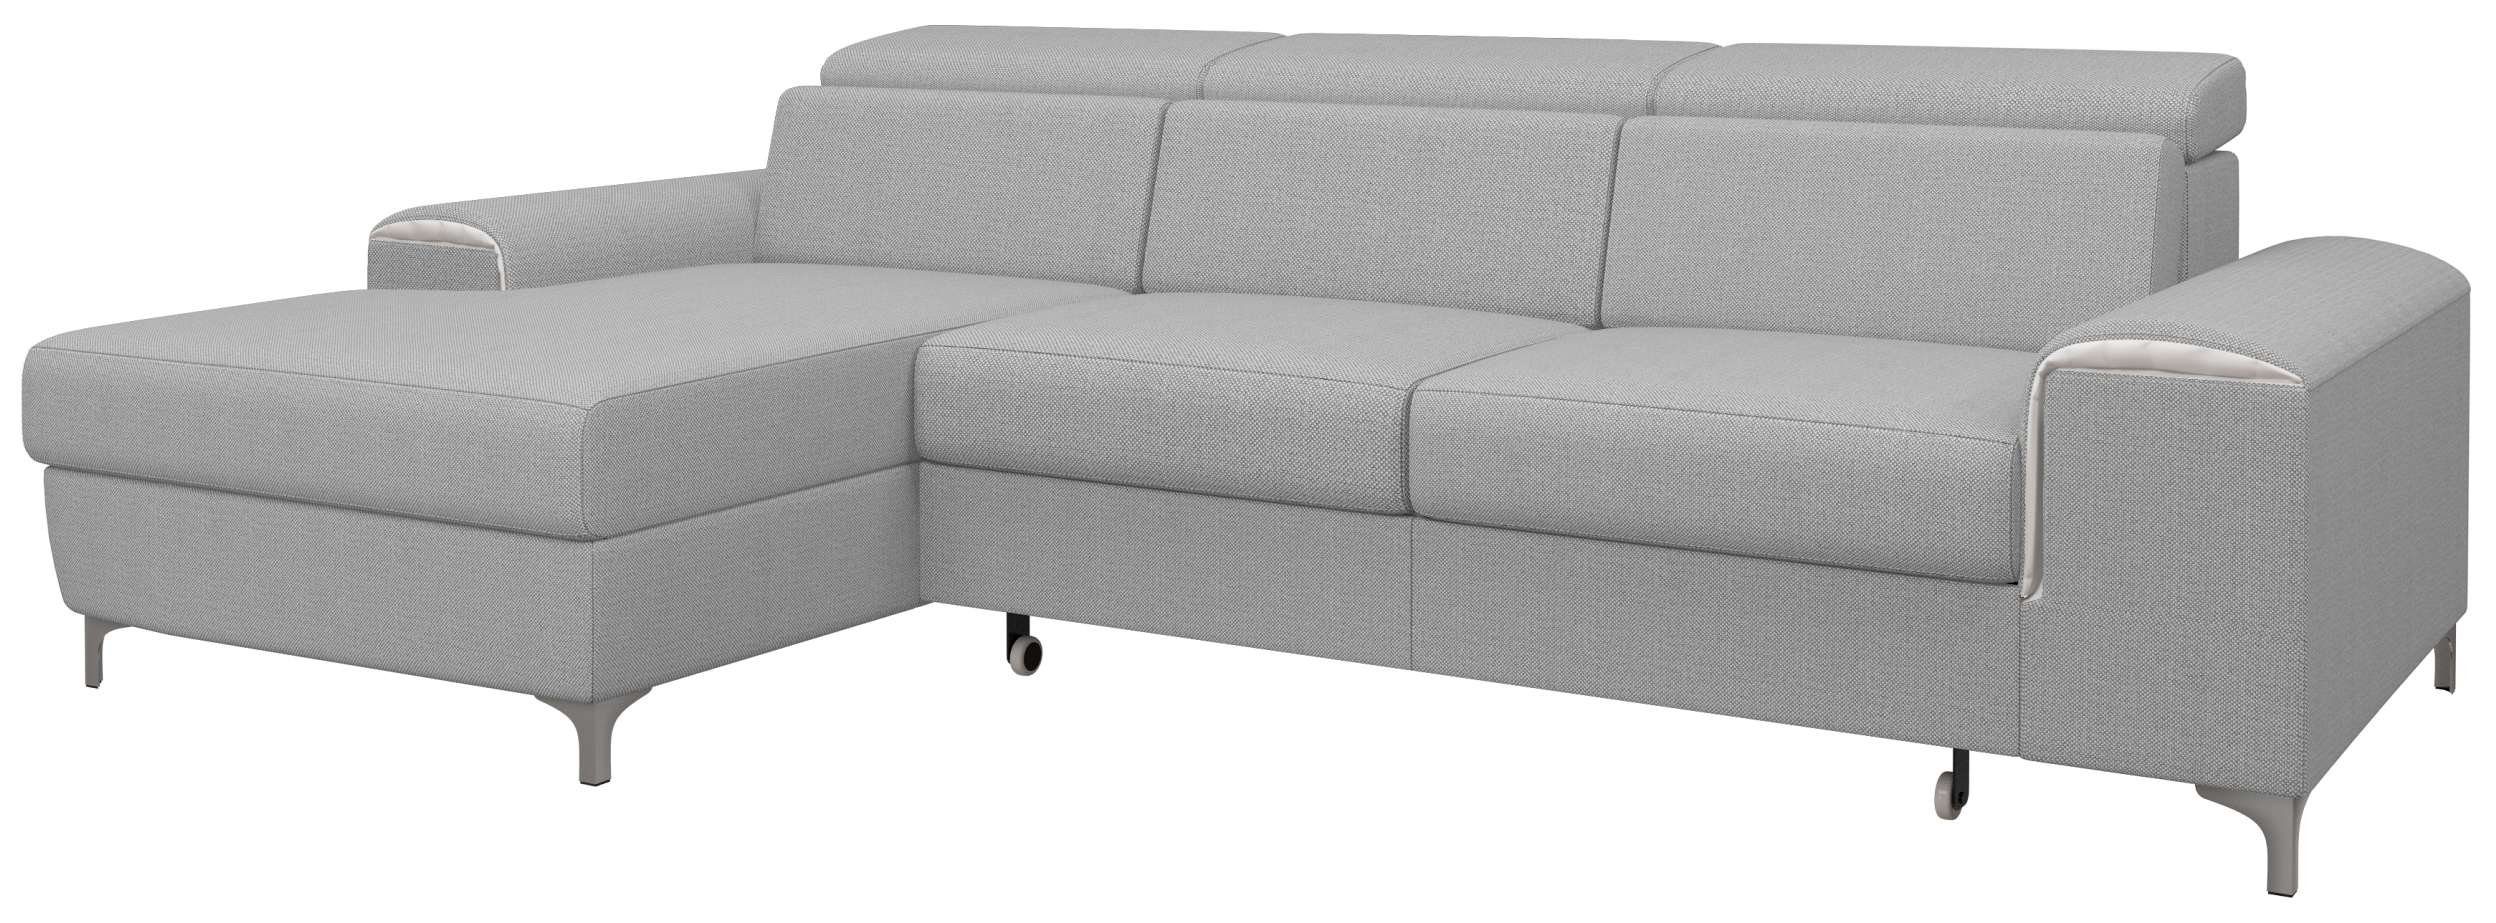 Sitzkomfort, Ecksofa mane Lino, Eckcouch, und L-Form, Raum stellbar, inklusive im Stylefy Bettkasten Bettfunktion, links rechts mit bestellbar, Kopfteilverstellung oder frei